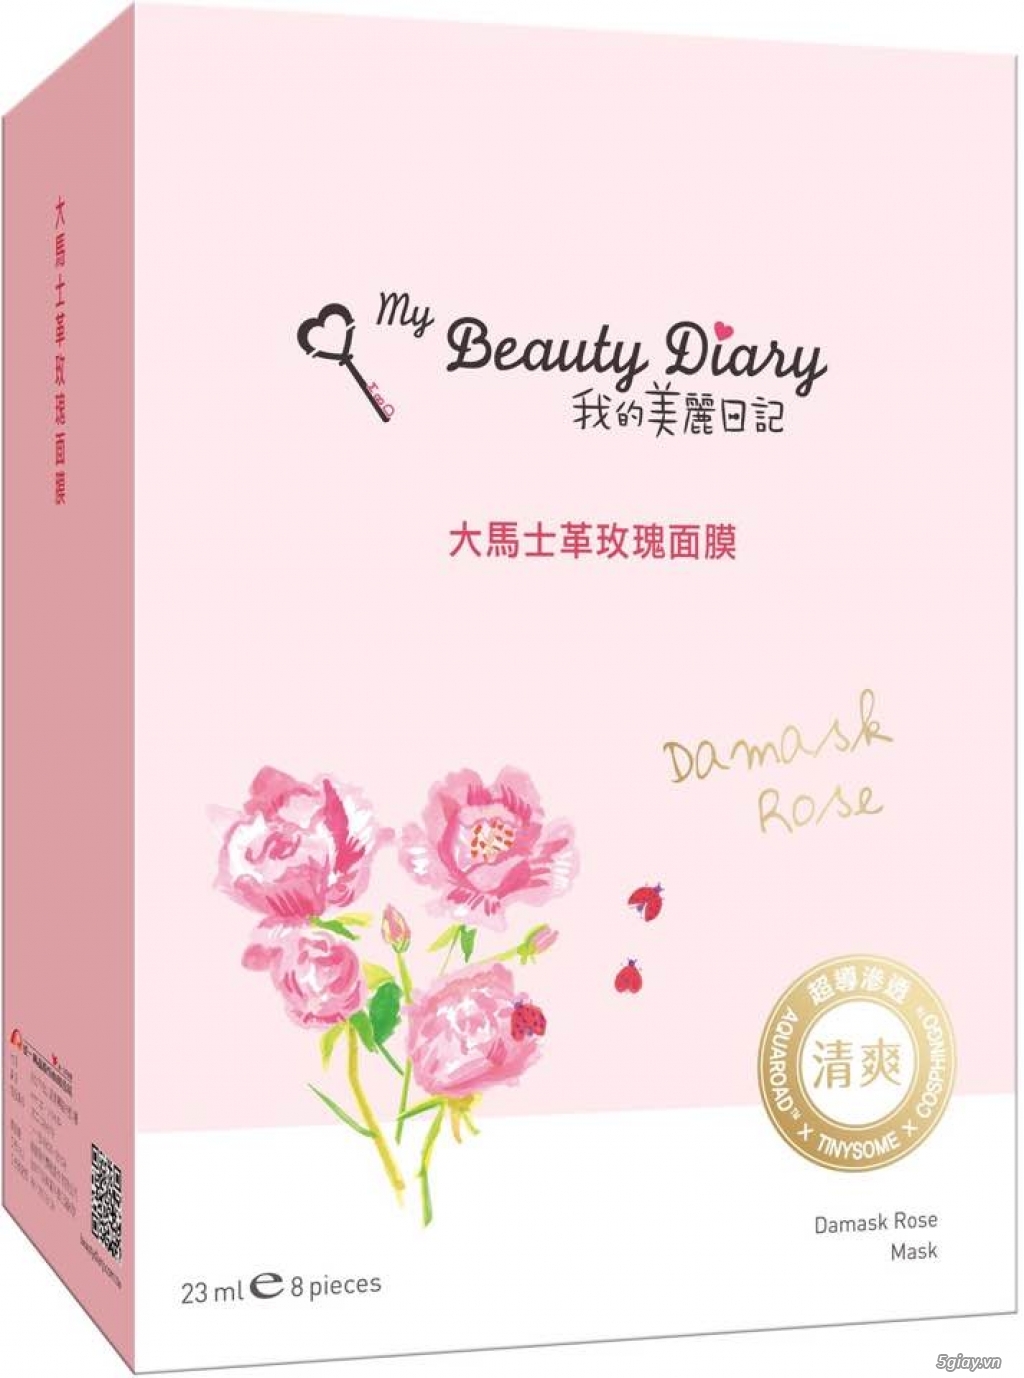 Phân phối sỉ, lẻ mặt nạ My Beauty Diary bán chạy số 1 tại Sing, Malay, Hongkong - 4